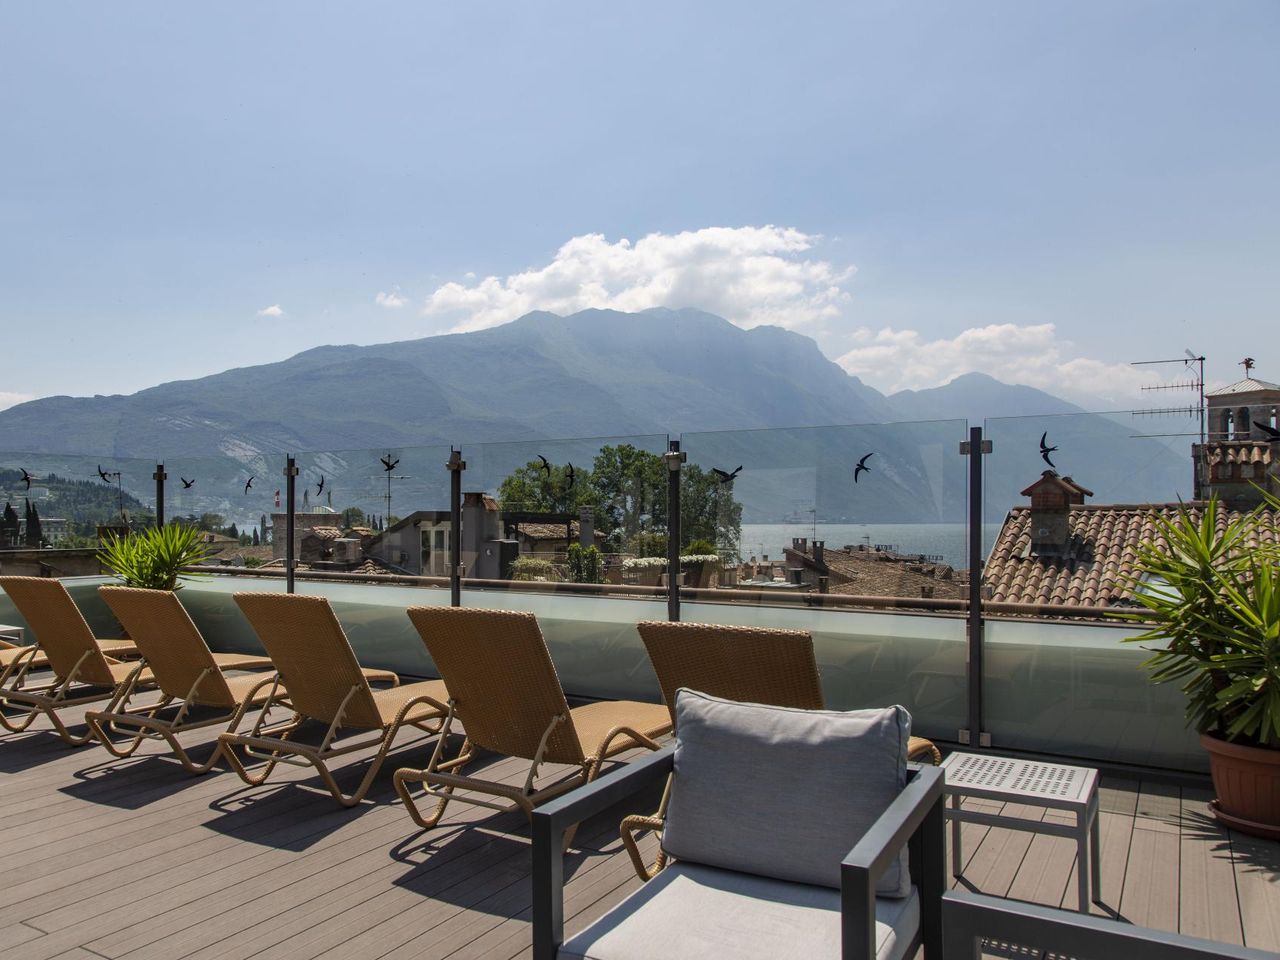 Auszeit am See - 4 Tage in Riva del Garda